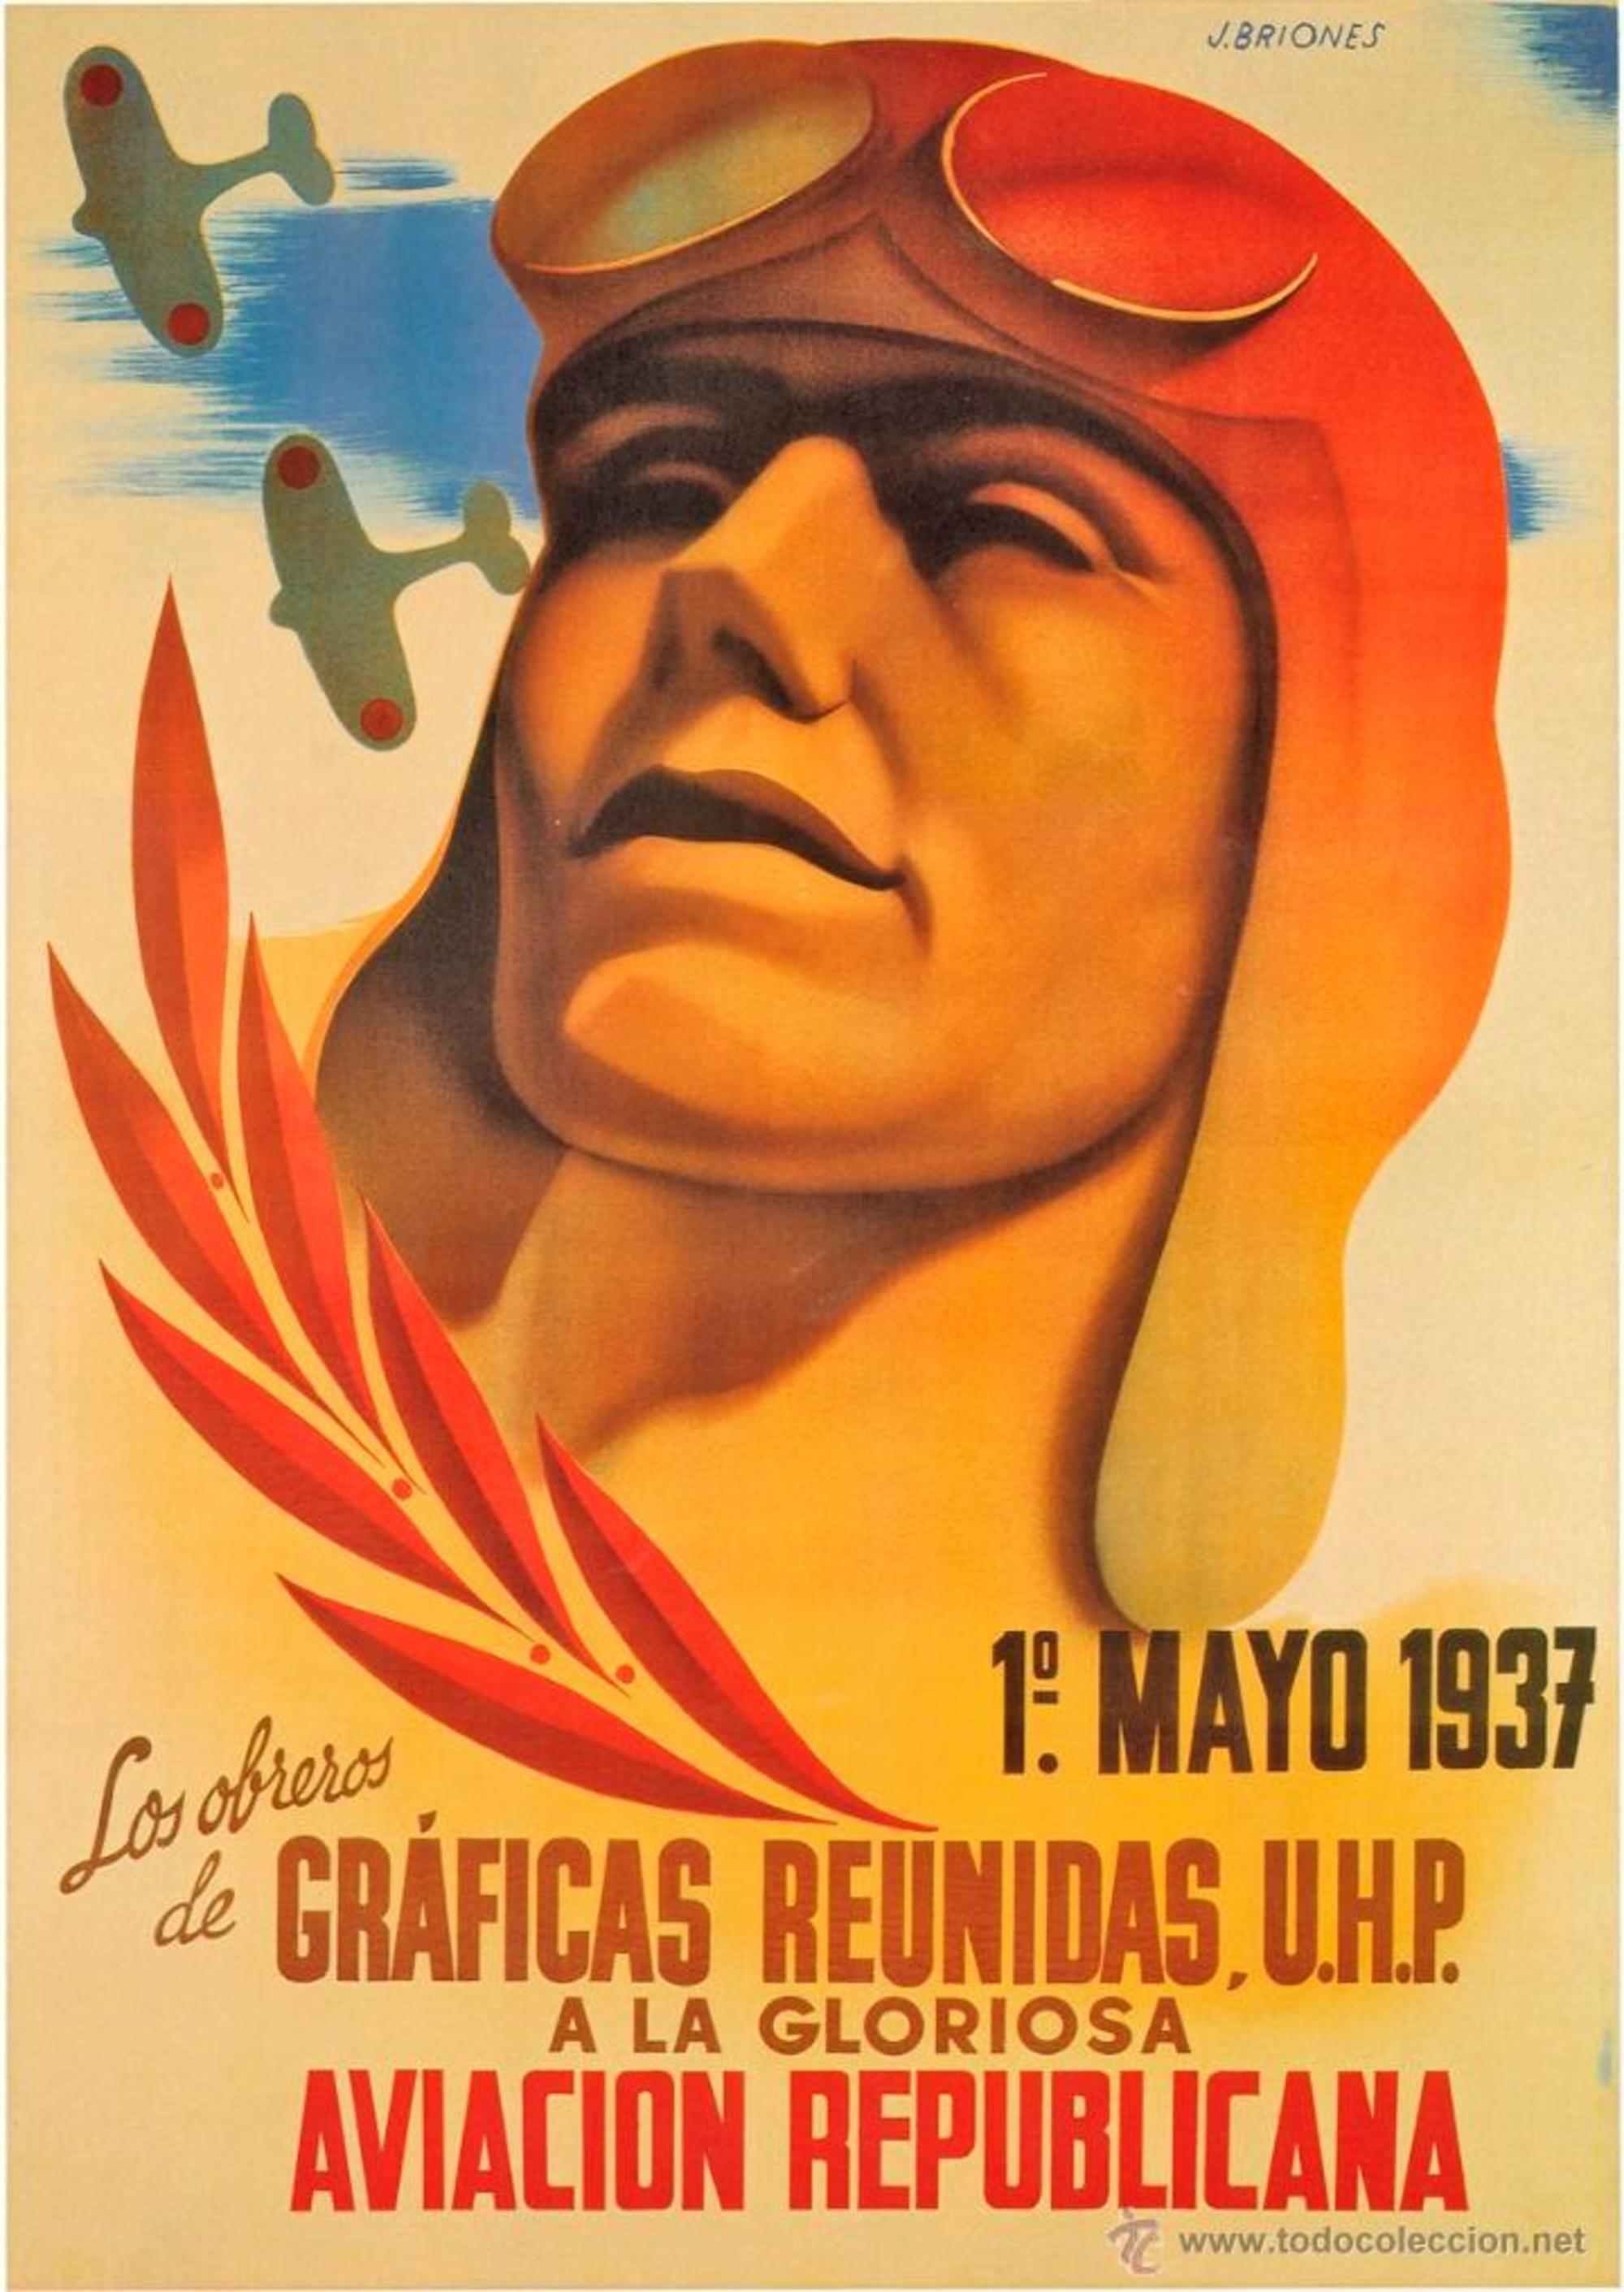 Cartel dedicado a La Gloriosa en el 1º de mayo de 1937